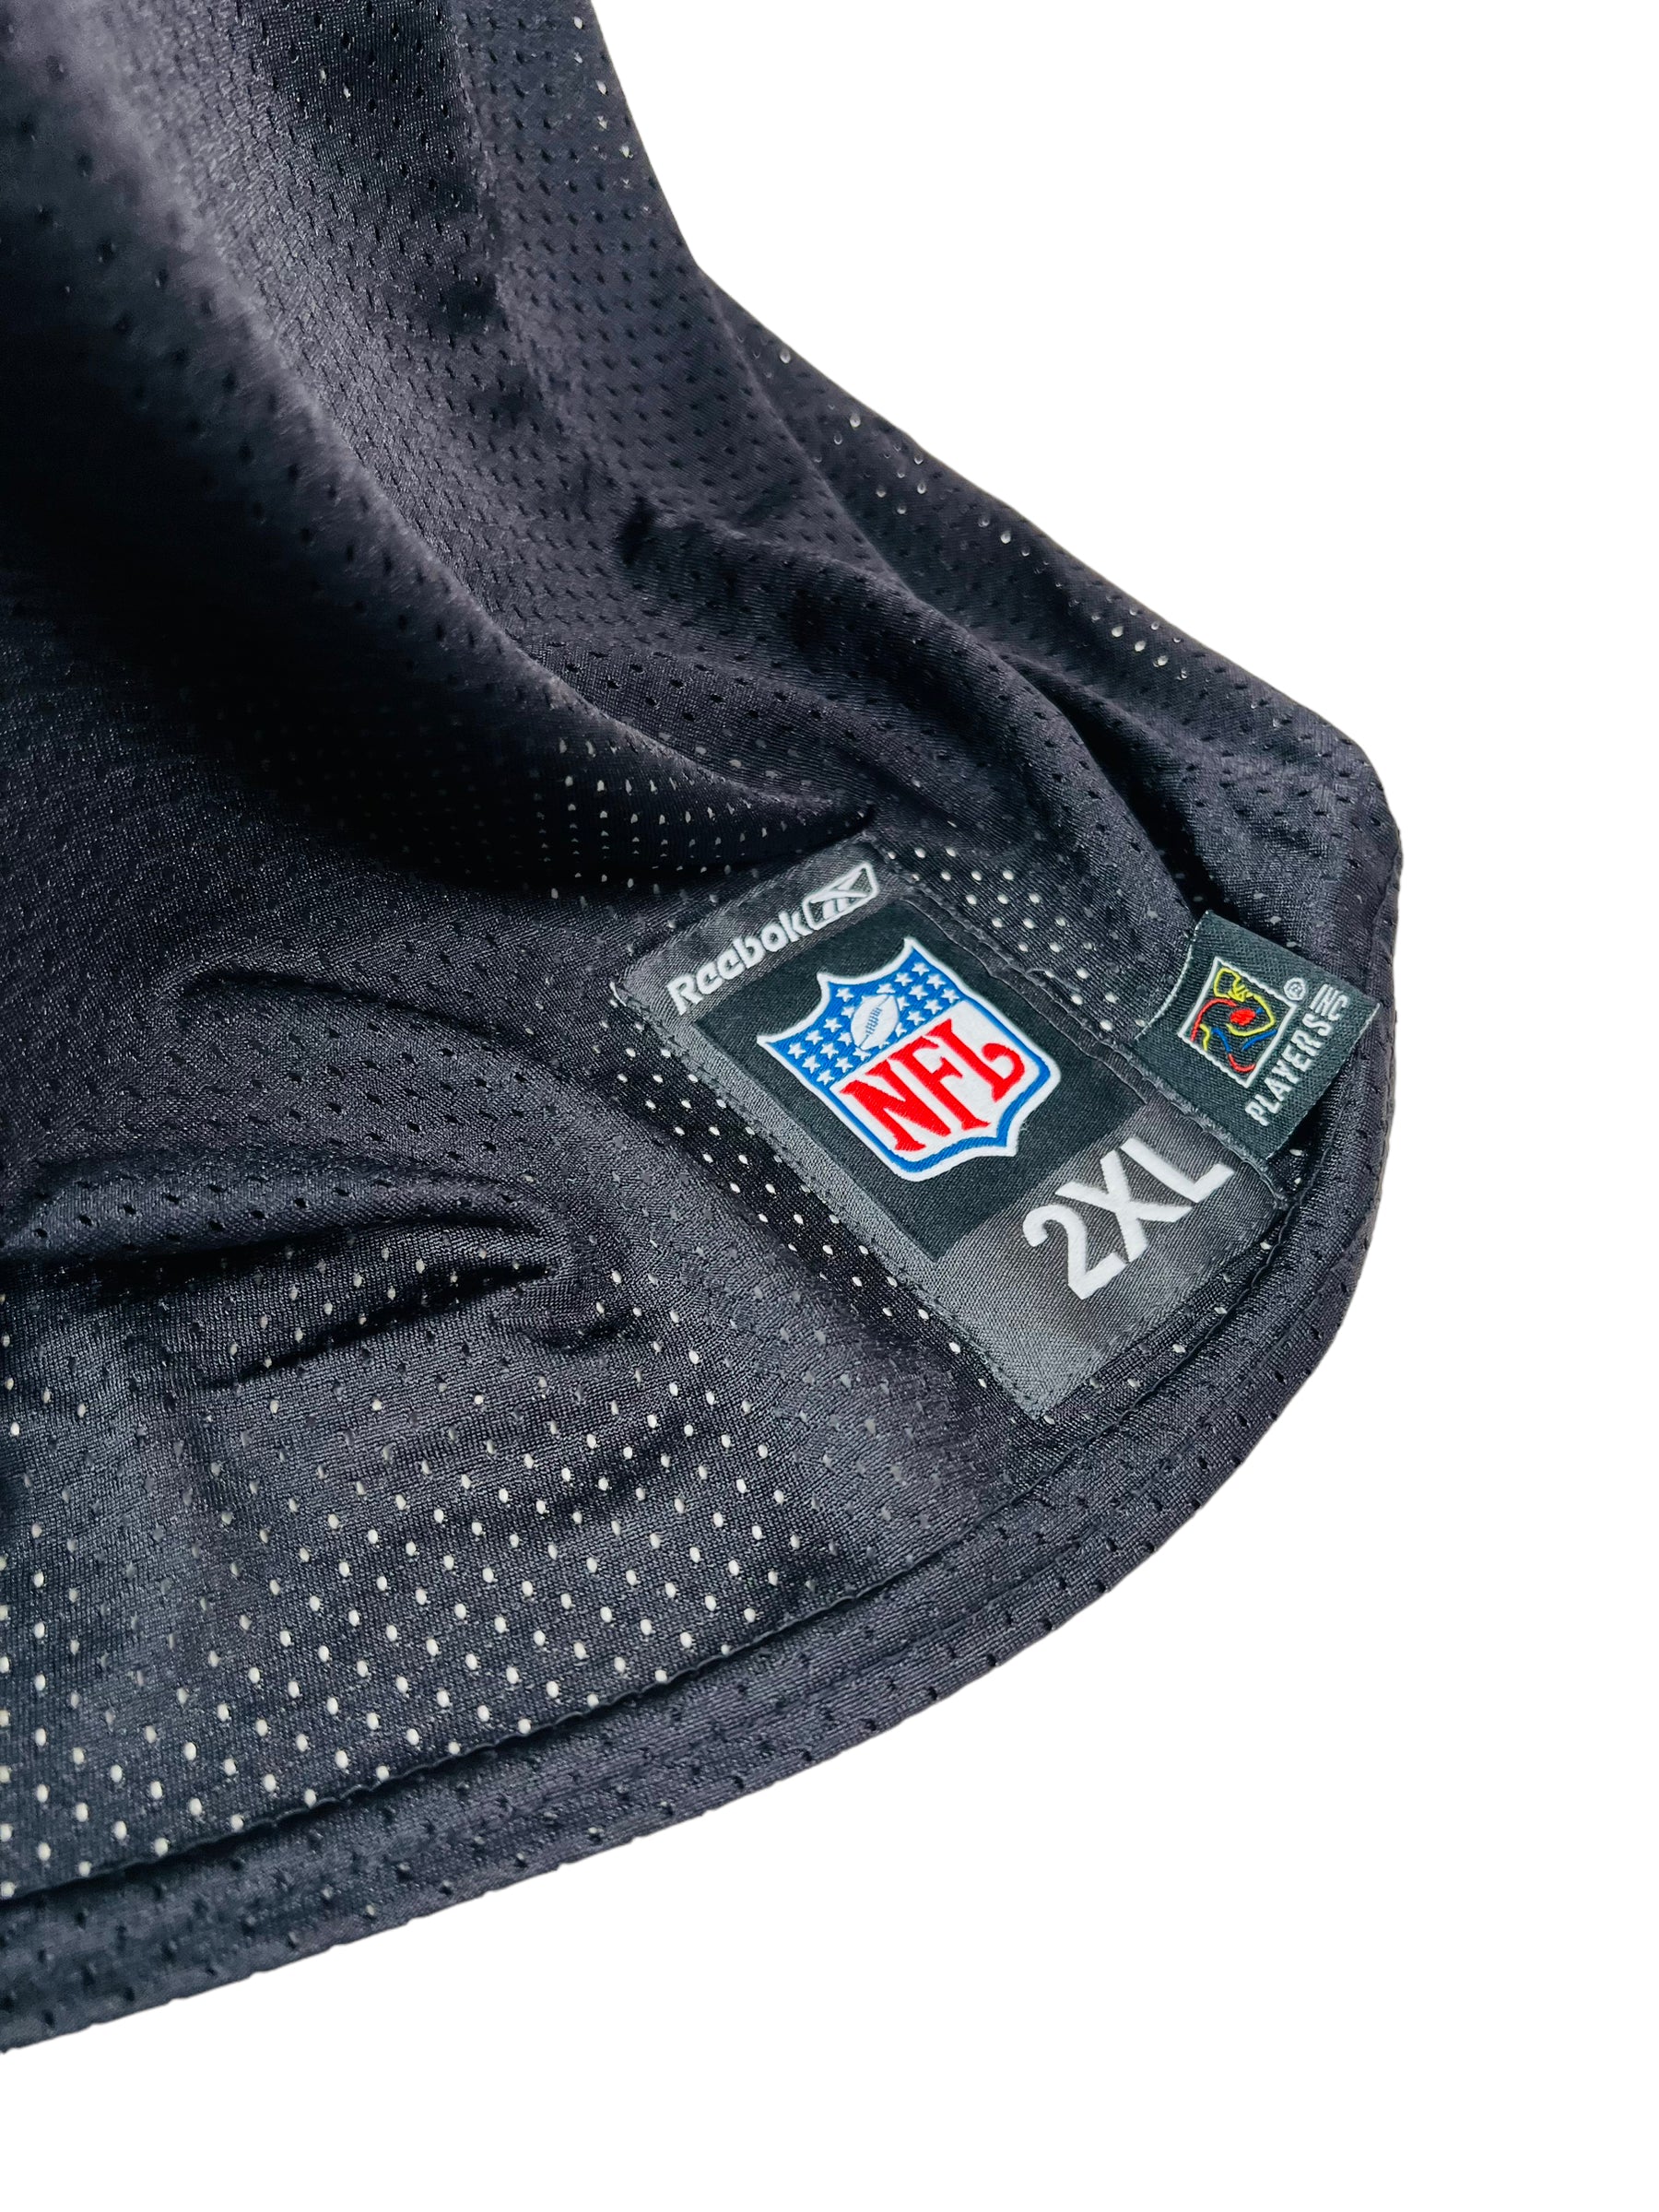 00's Donovan McNabb Philadelphia Eagles Reebok NFL Jersey Size 4XL – Rare  VNTG